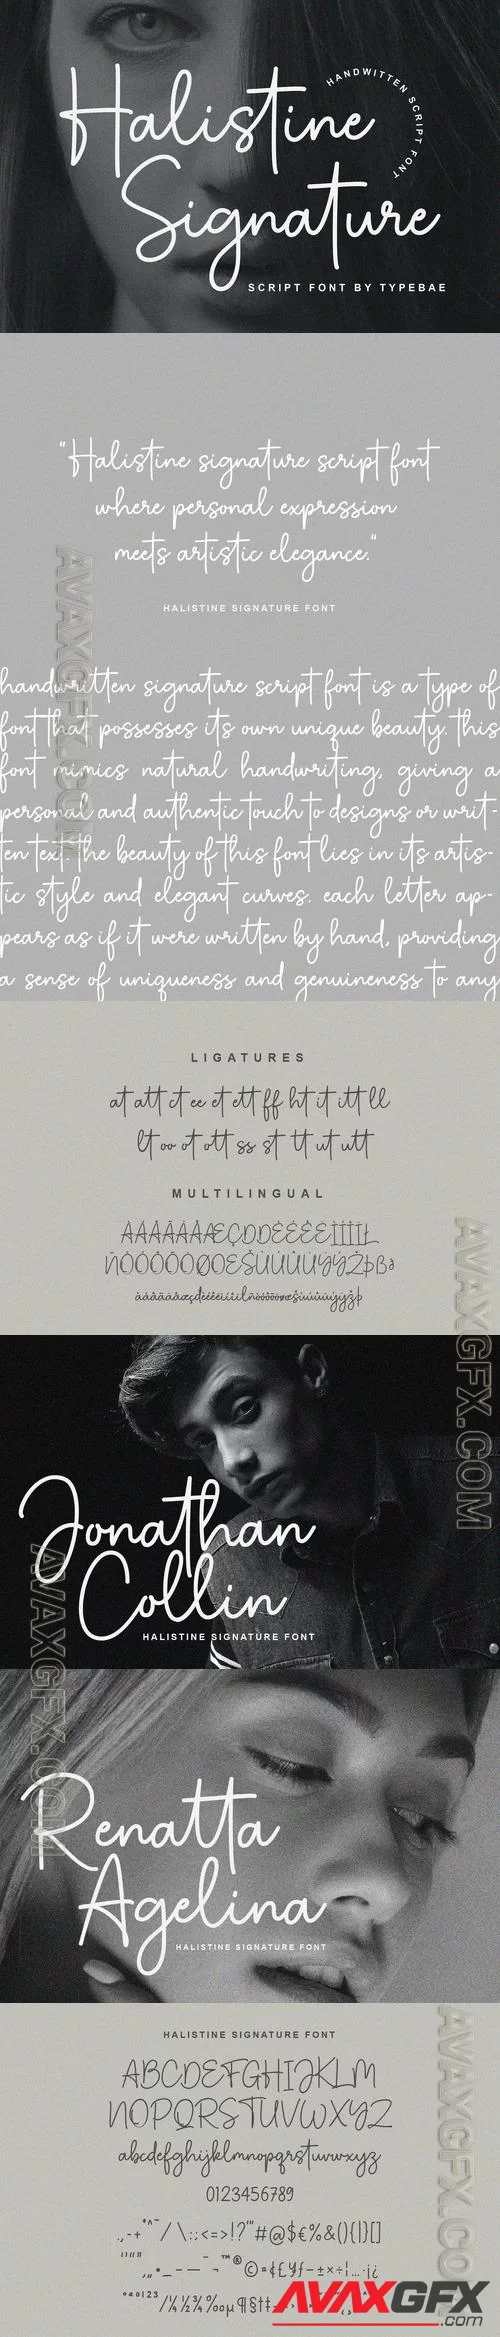 Halistine Signature Font Font